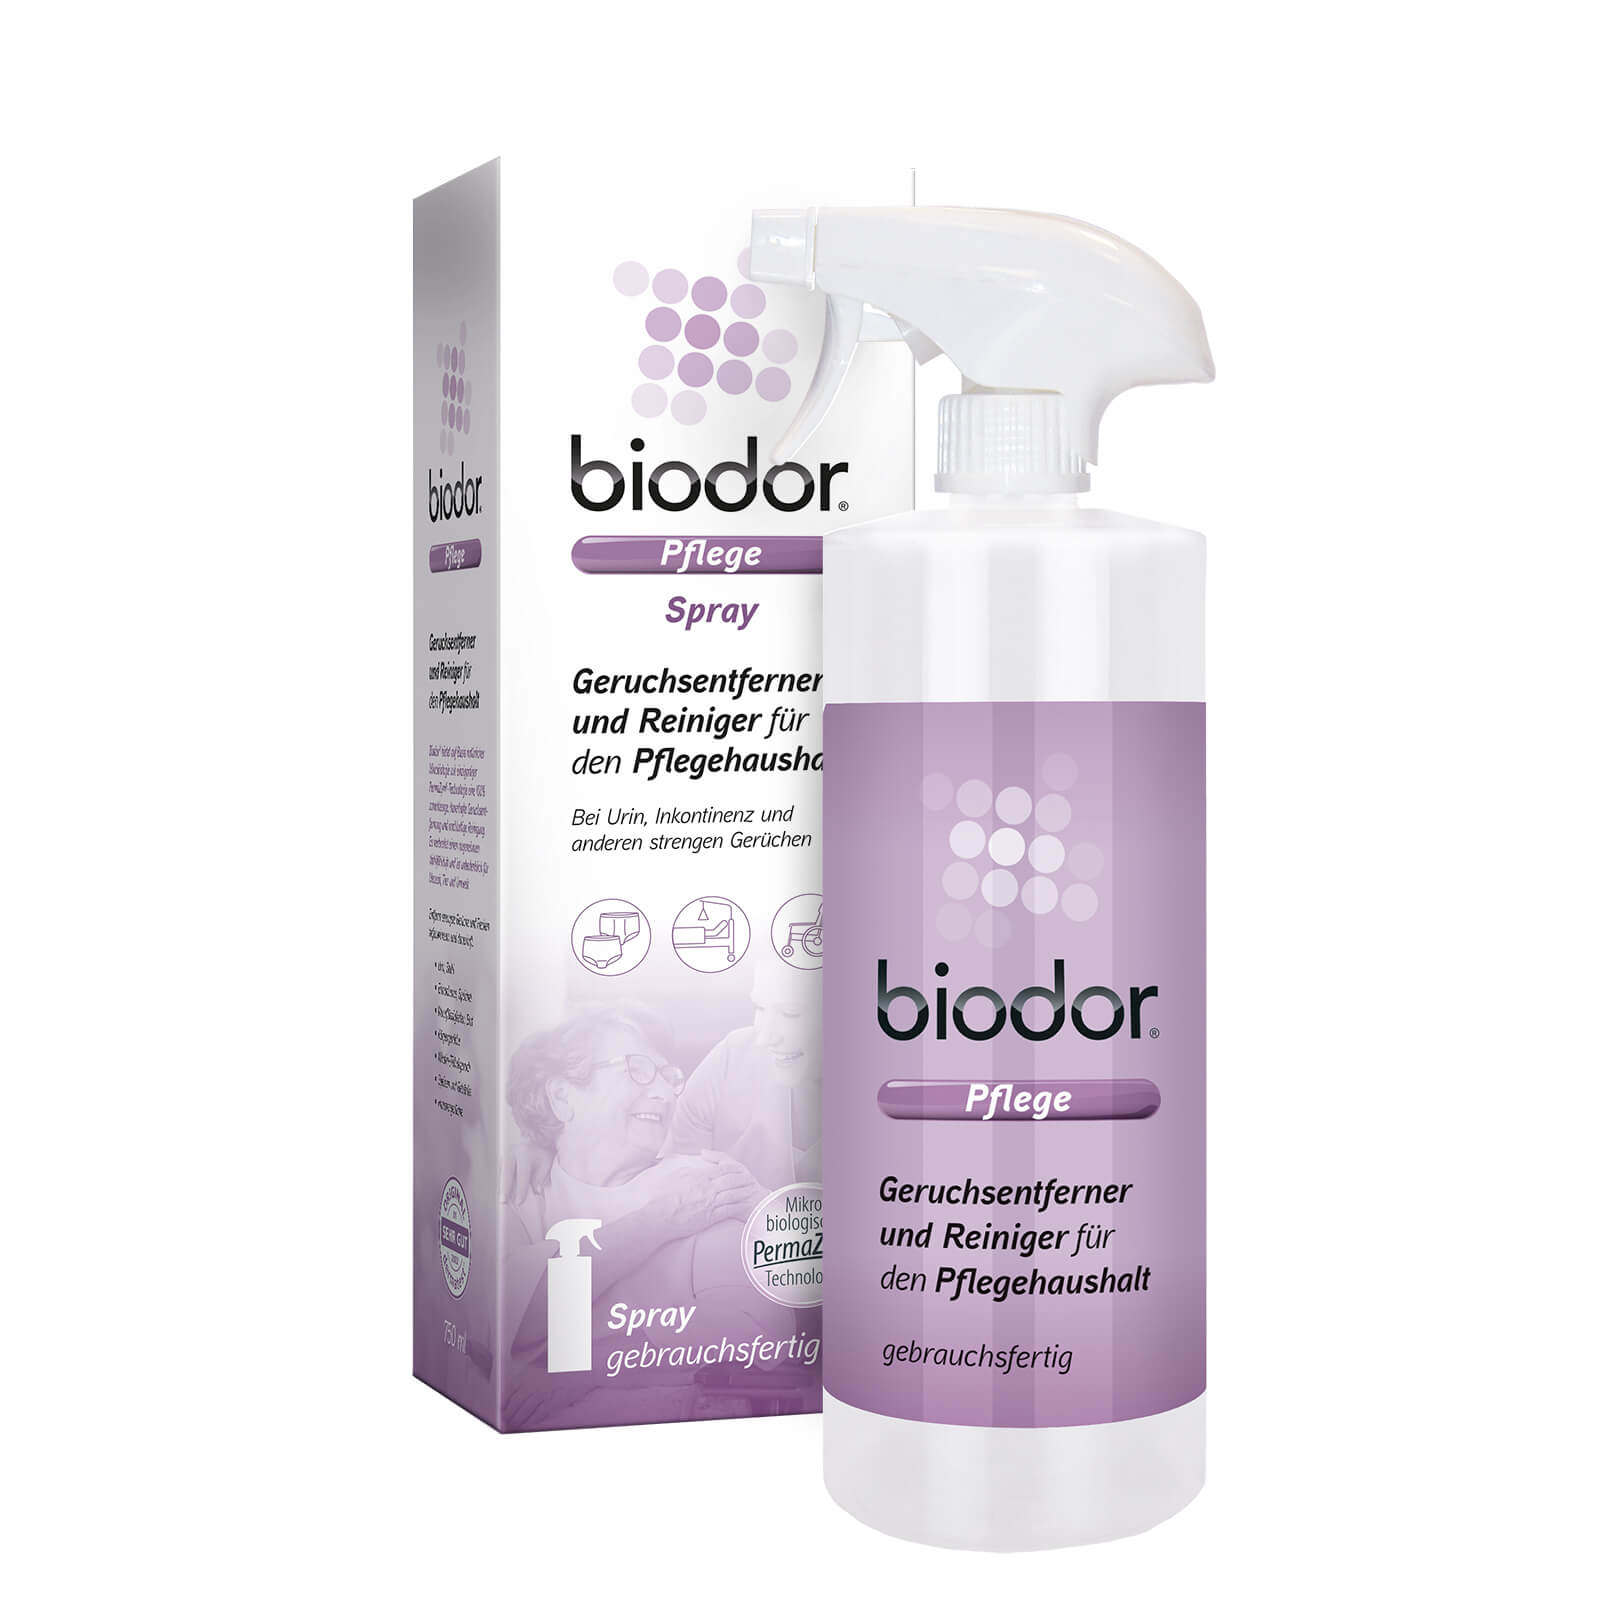 Biodor Pflege Geruchsentferner und Reiniger Spray 750ml